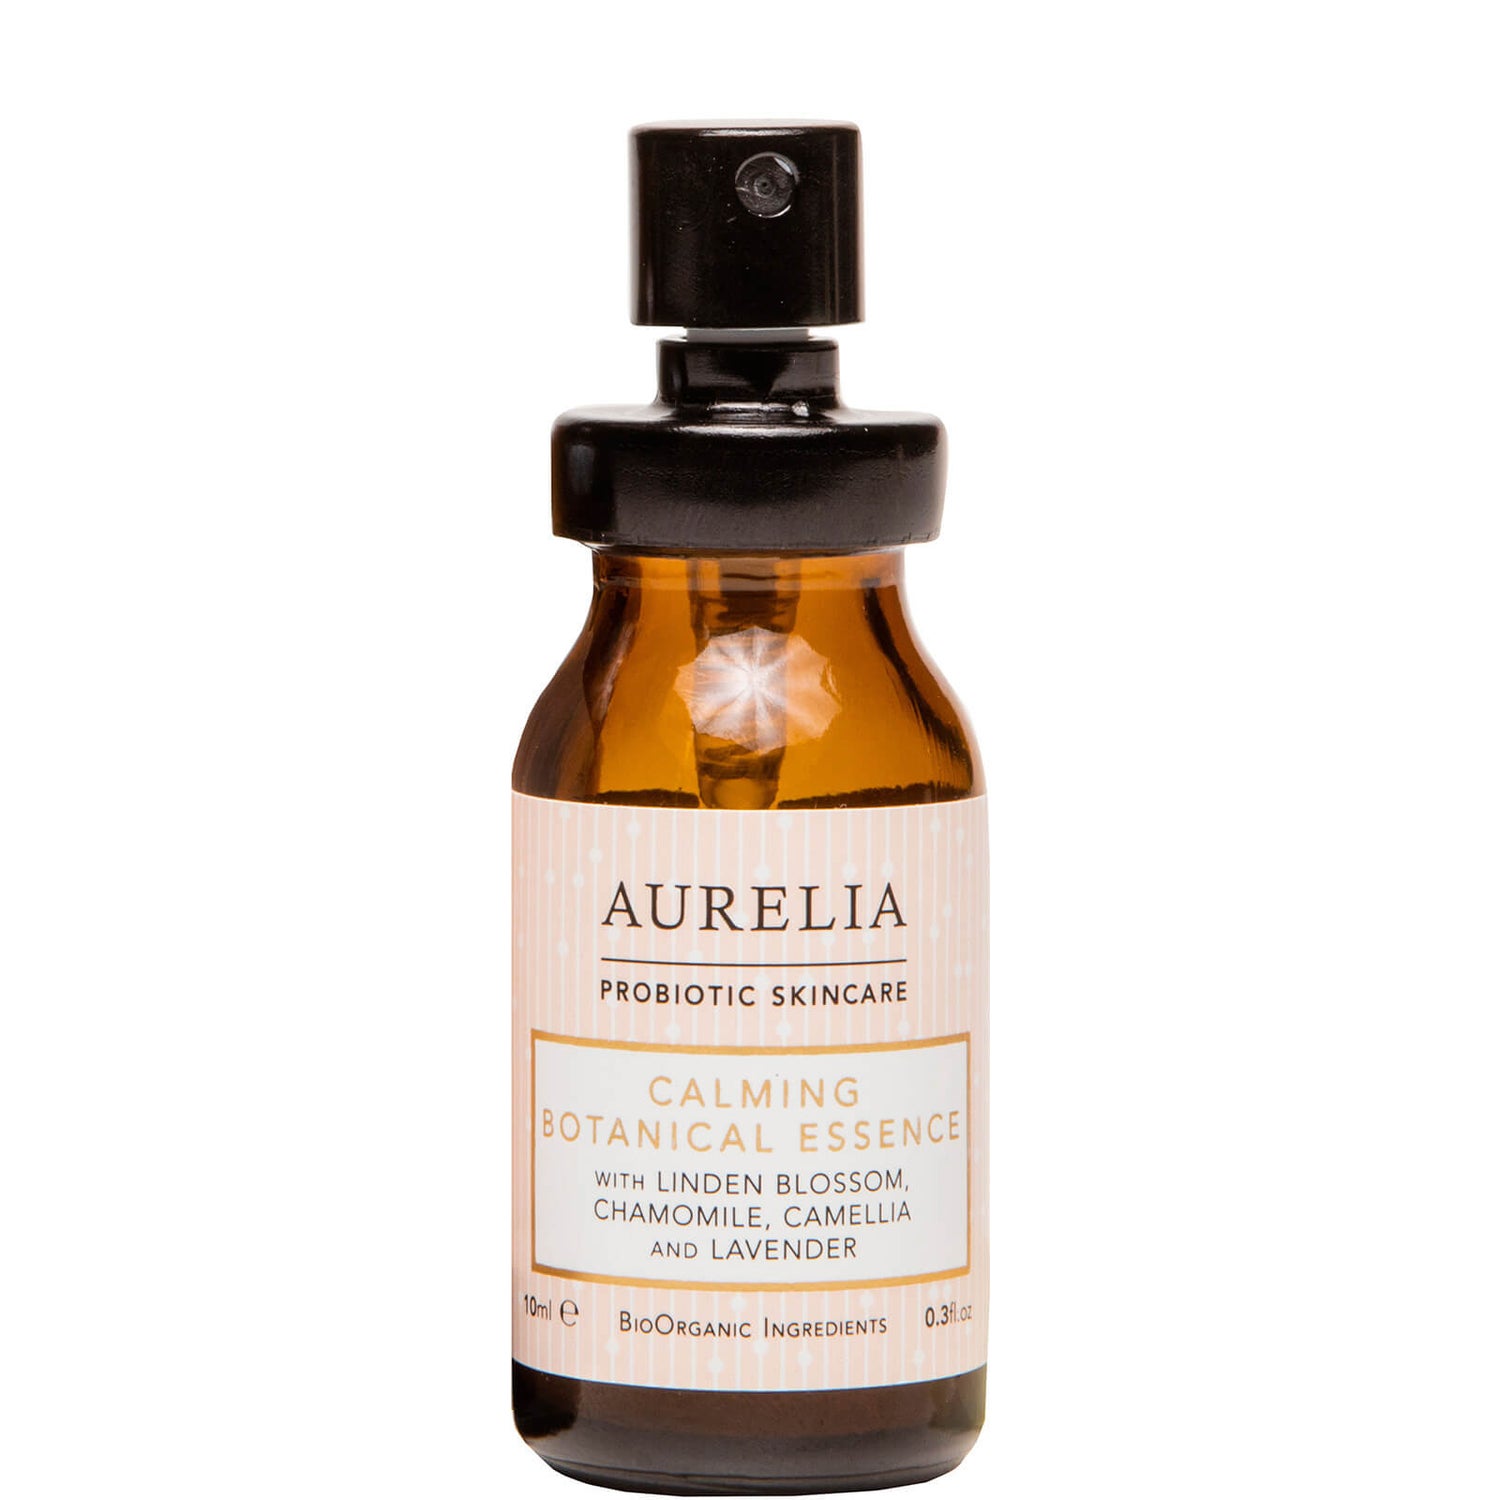 Aurelia Probiotic Skincare Calming Botanical Essence 10ml